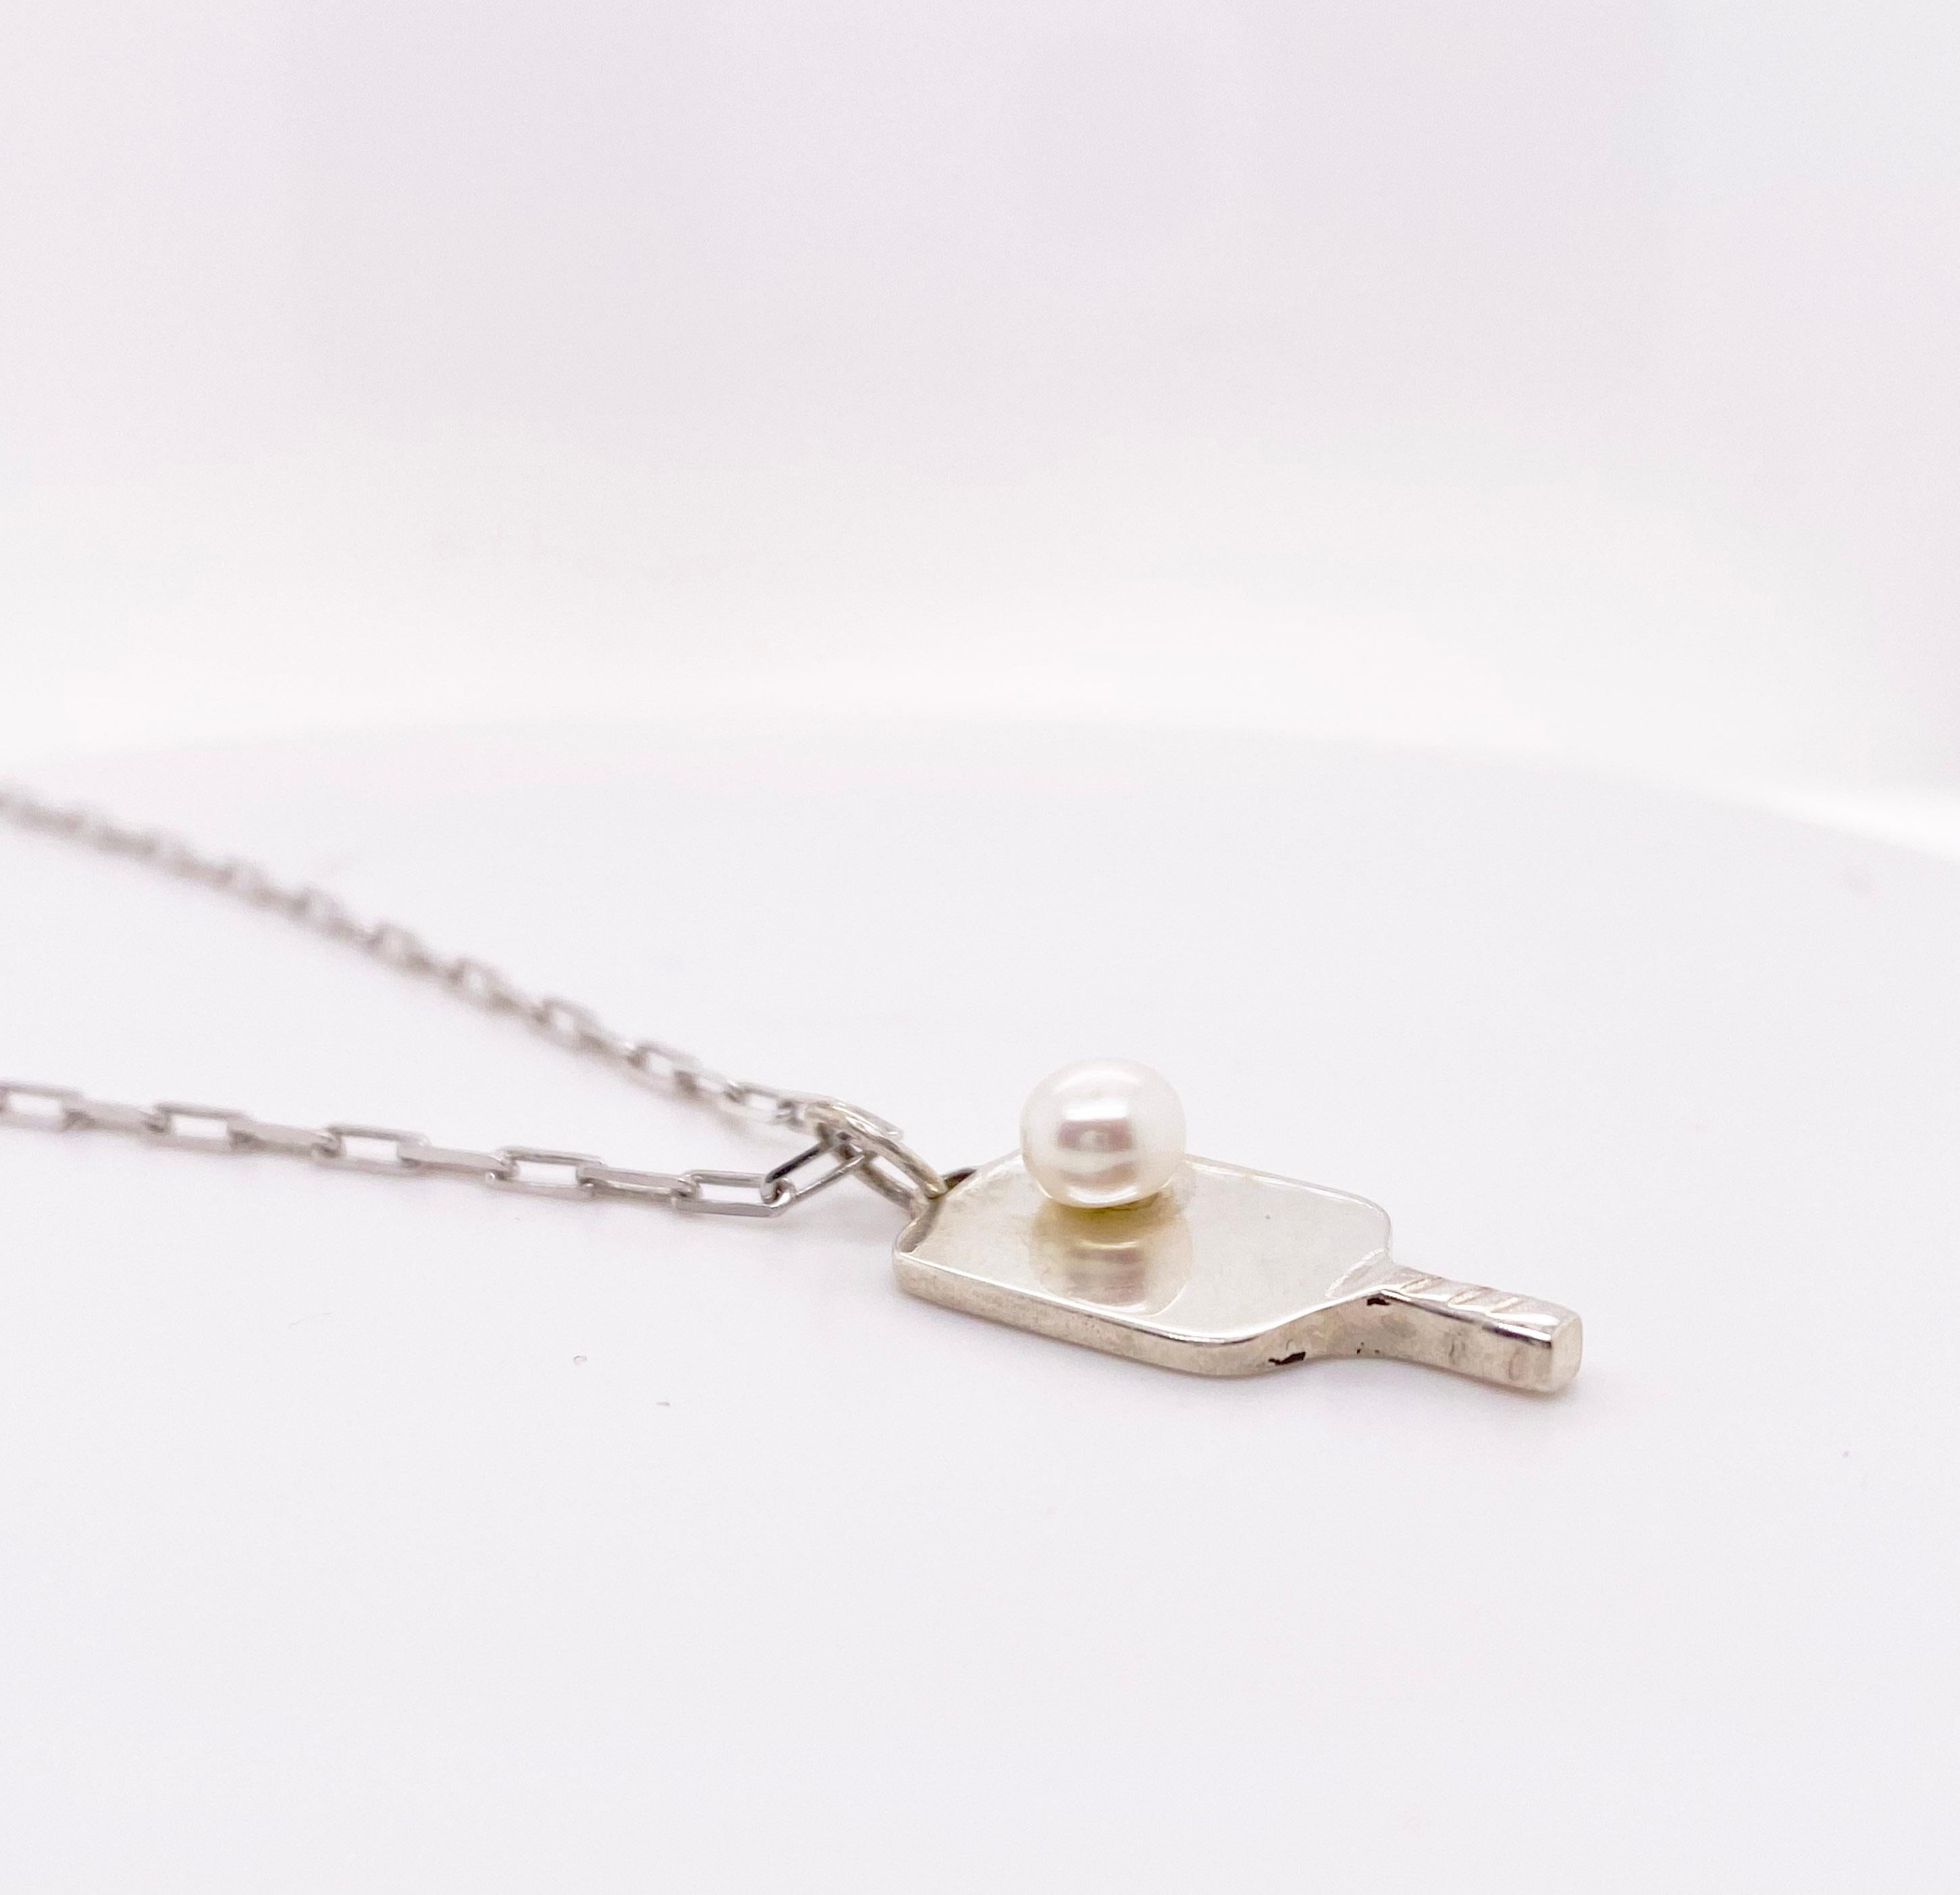 Questa collana di racchette da pickleball è stata realizzata a mano dai nostri gioiellieri della Five Star Jewelry di Austin, Texas! Amiamo il pickleball e giochiamo quasi tutti i giorni, quindi volevamo creare una collana che mostrasse quanto